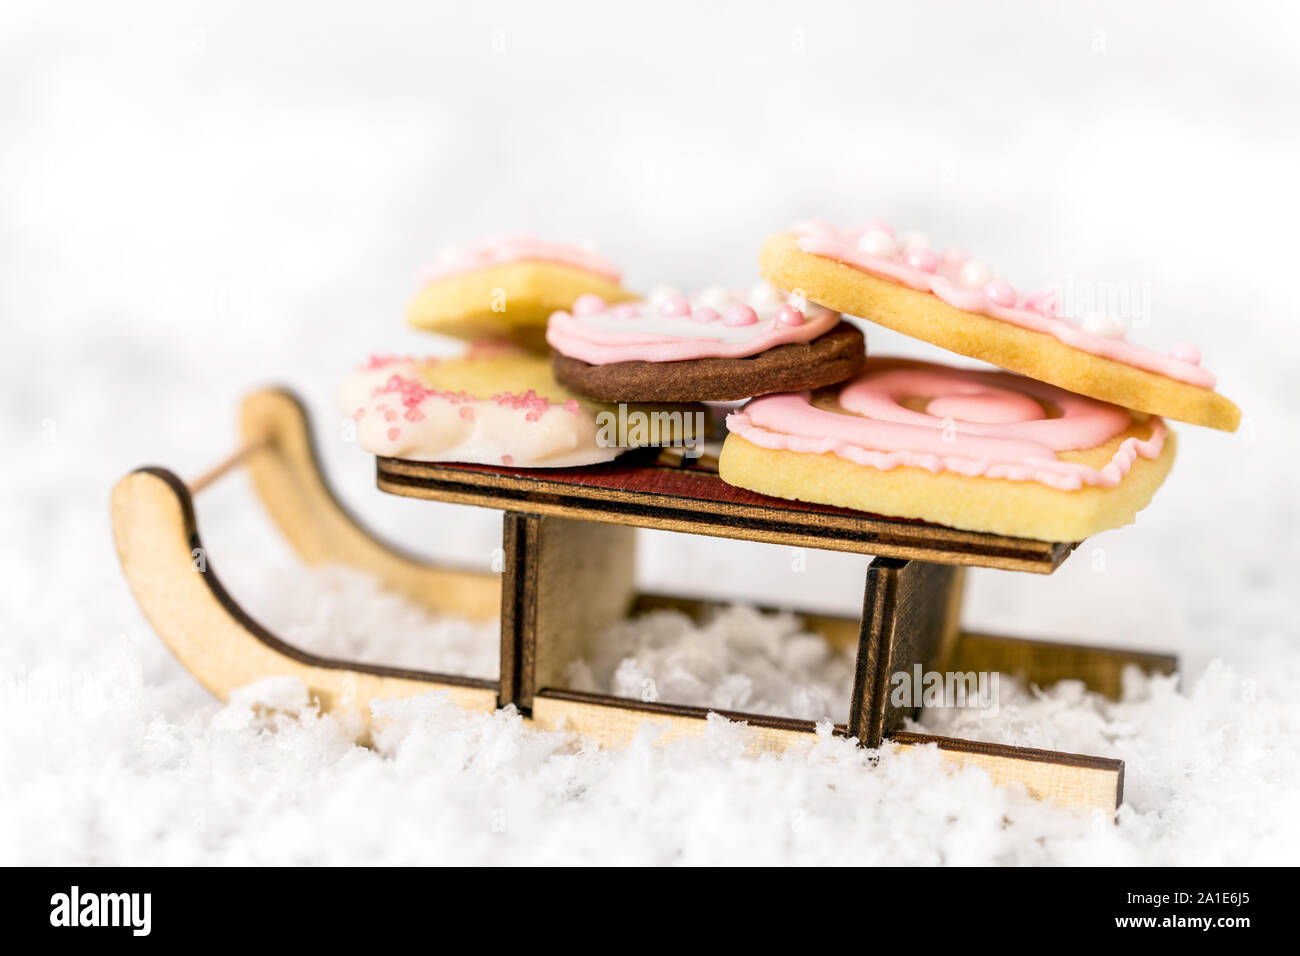 Rosa galletas de Navidad en un trineo de madera, fondo blanco, concepto de panadería y temporada de invierno Foto de stock